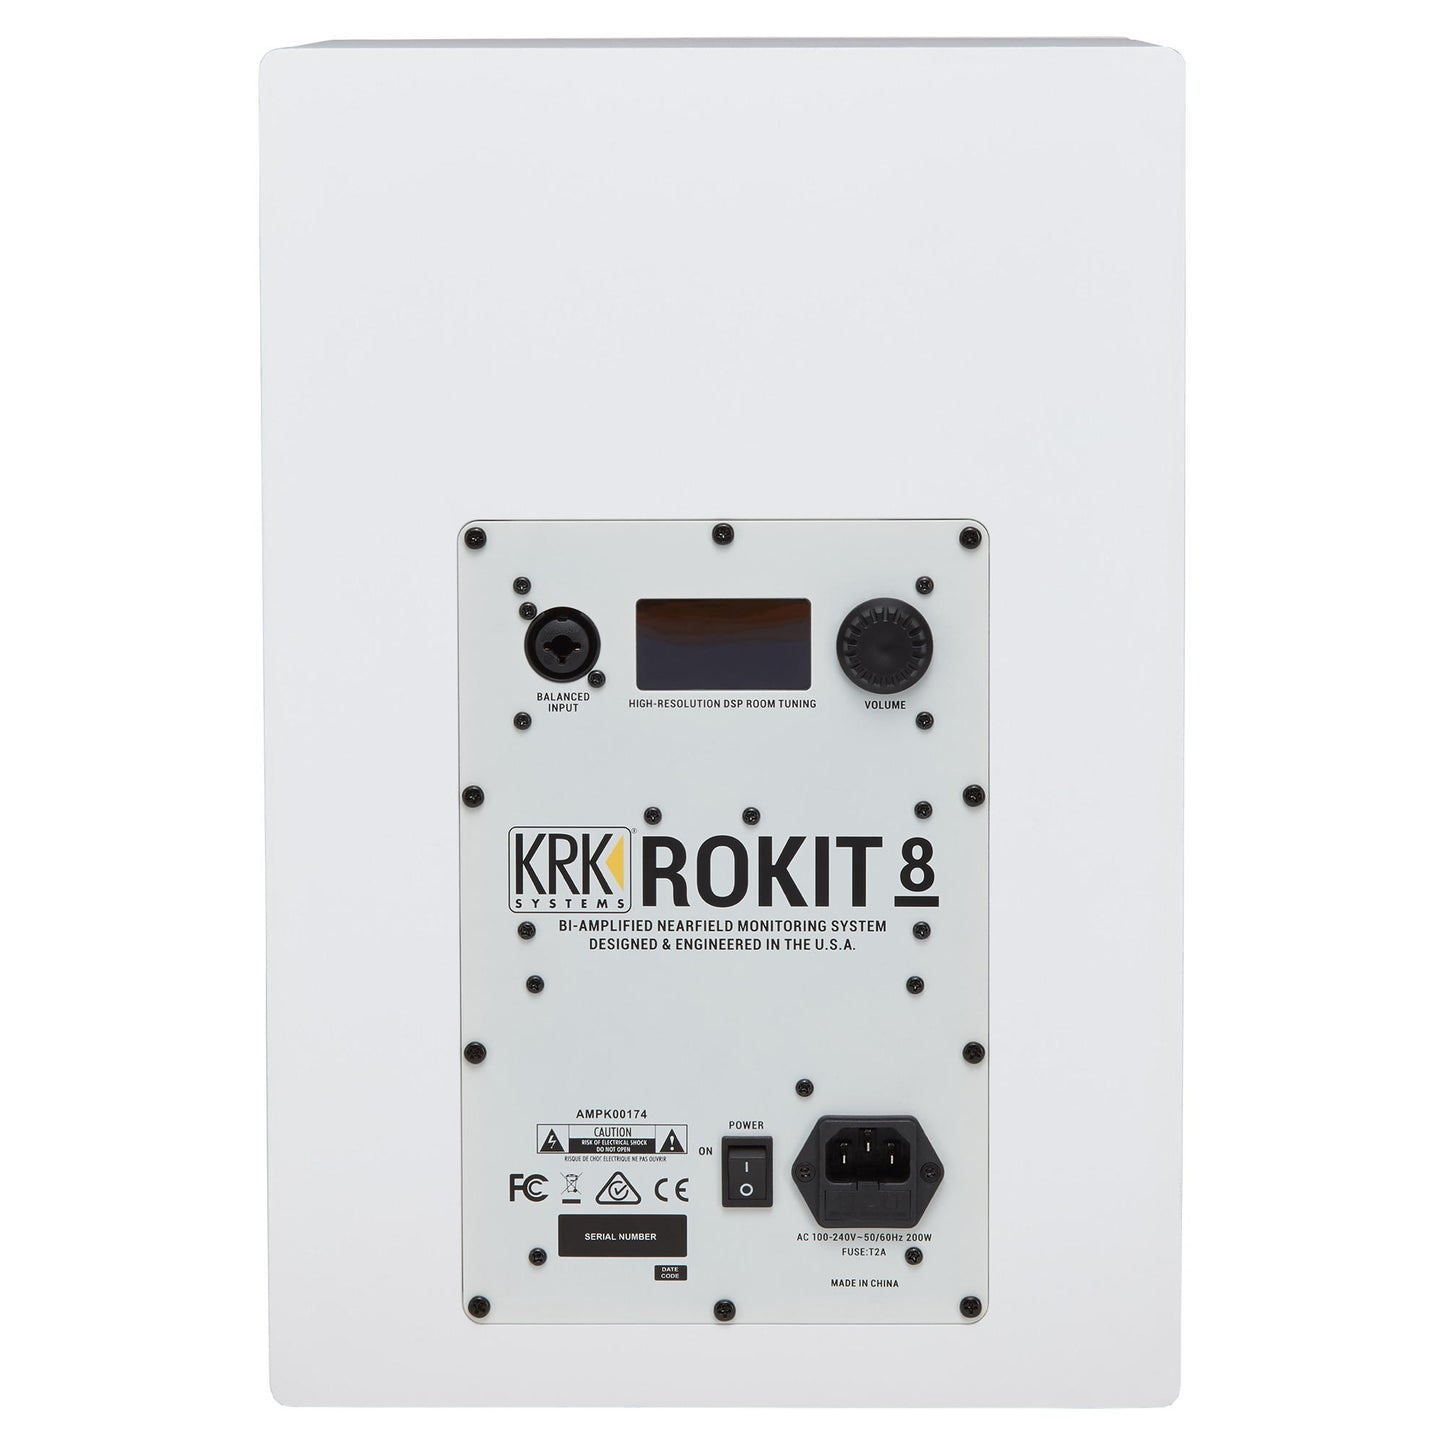 KRK ROKIT 8 Generation 4 Powered Studio Monitor - White - Back